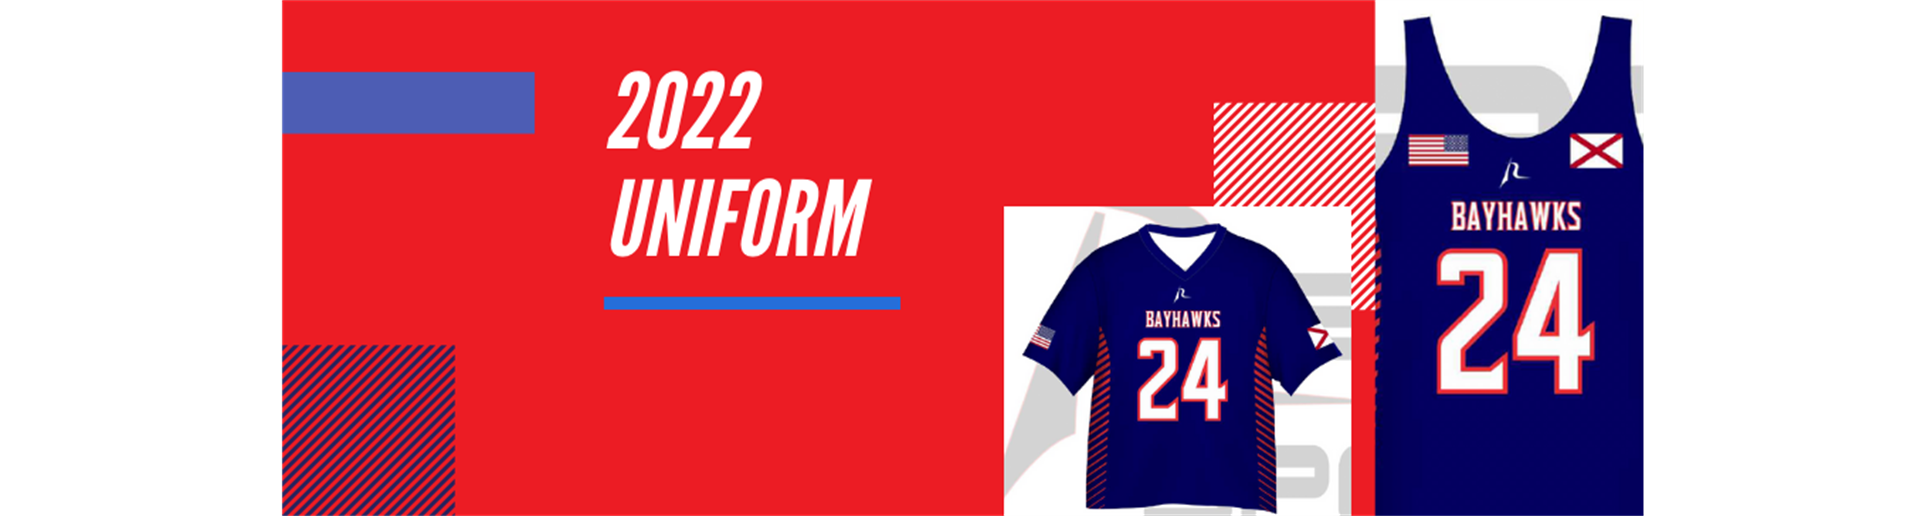 2022 Uniform Details